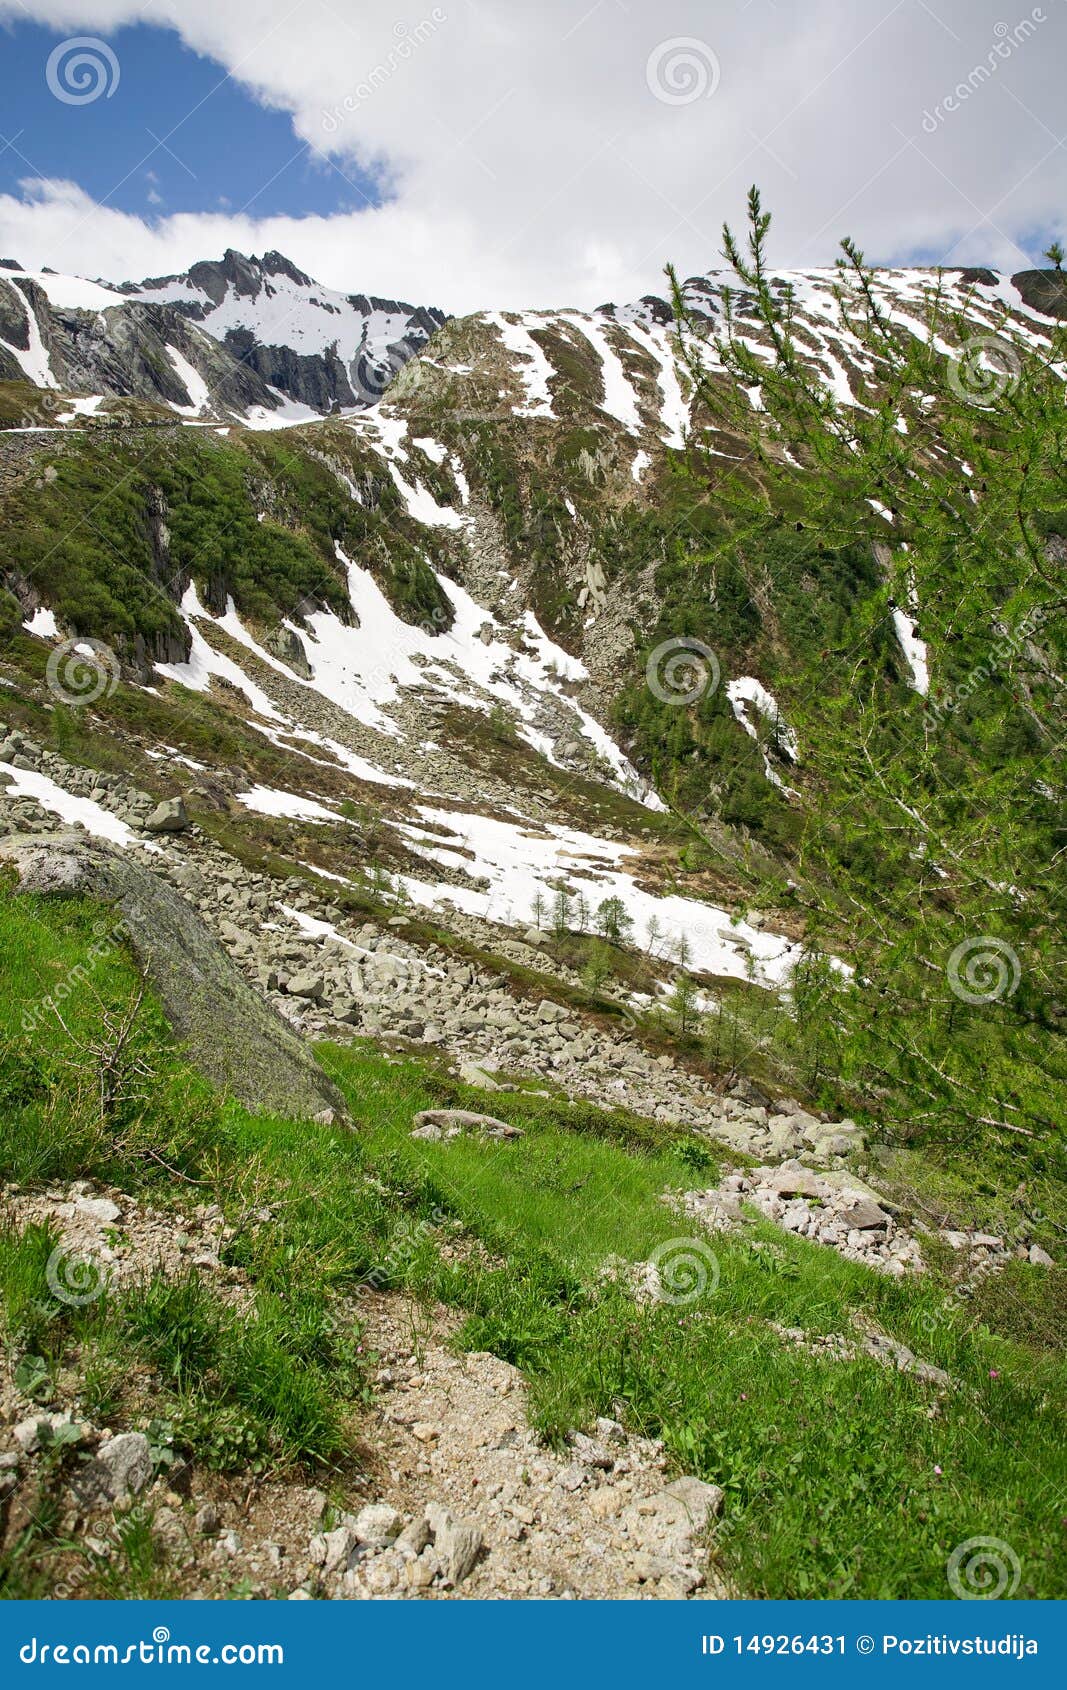 switzerland alps